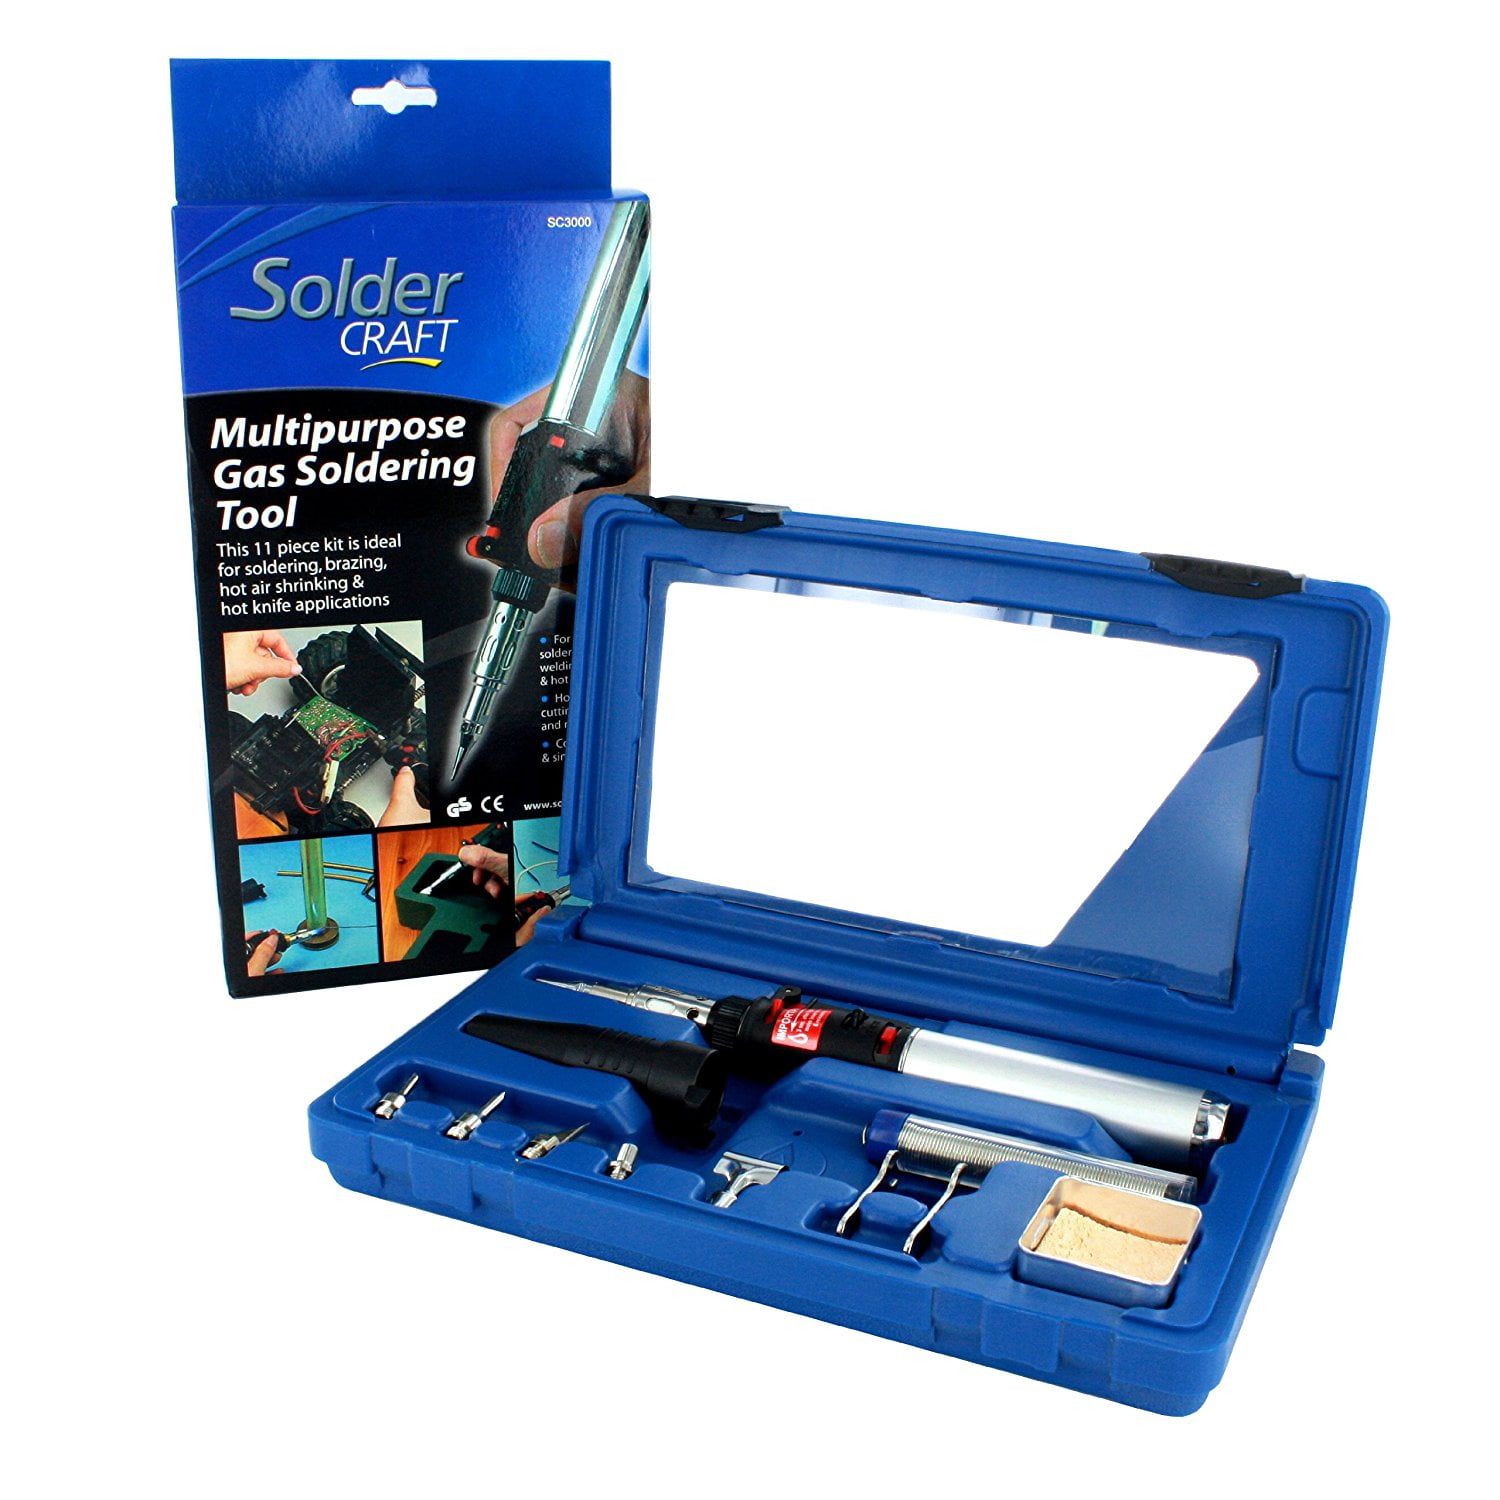 Soldercraft Multi-purpose Gas Soldering Tool Kit